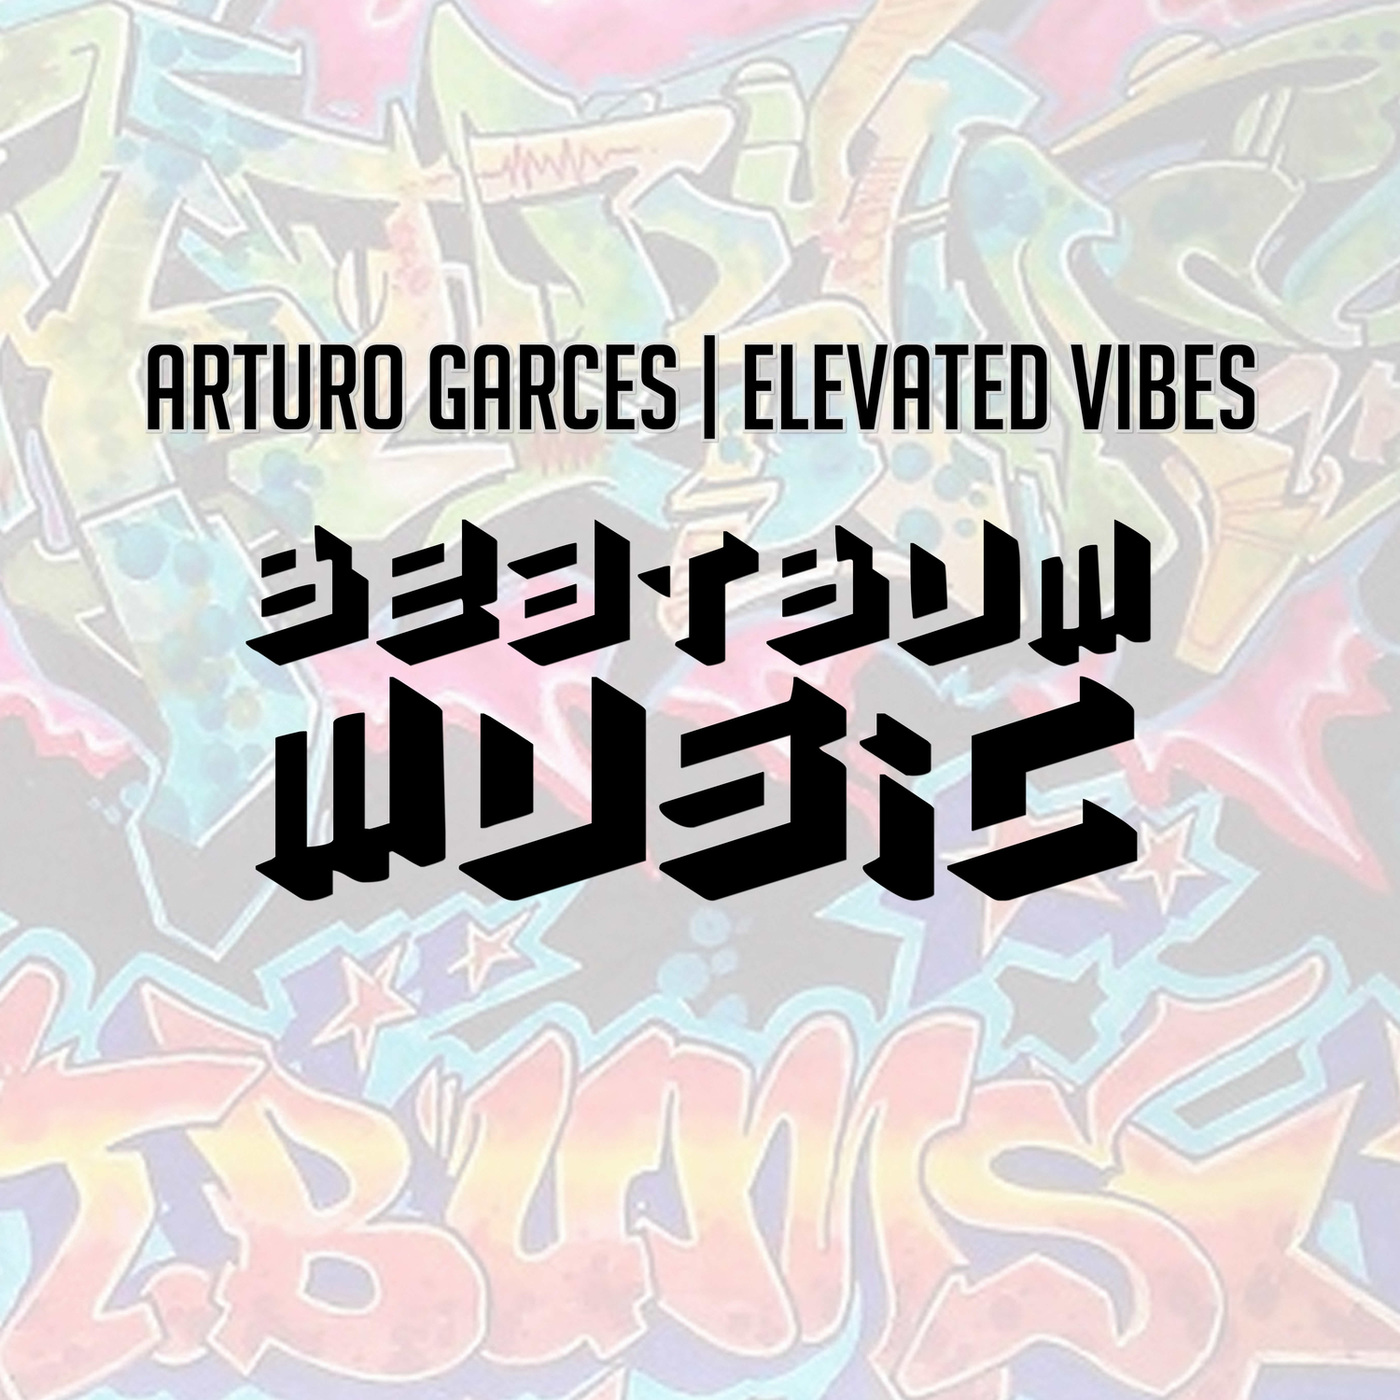 Arturo Garces - Elevated Vibes / Beat Bum Music